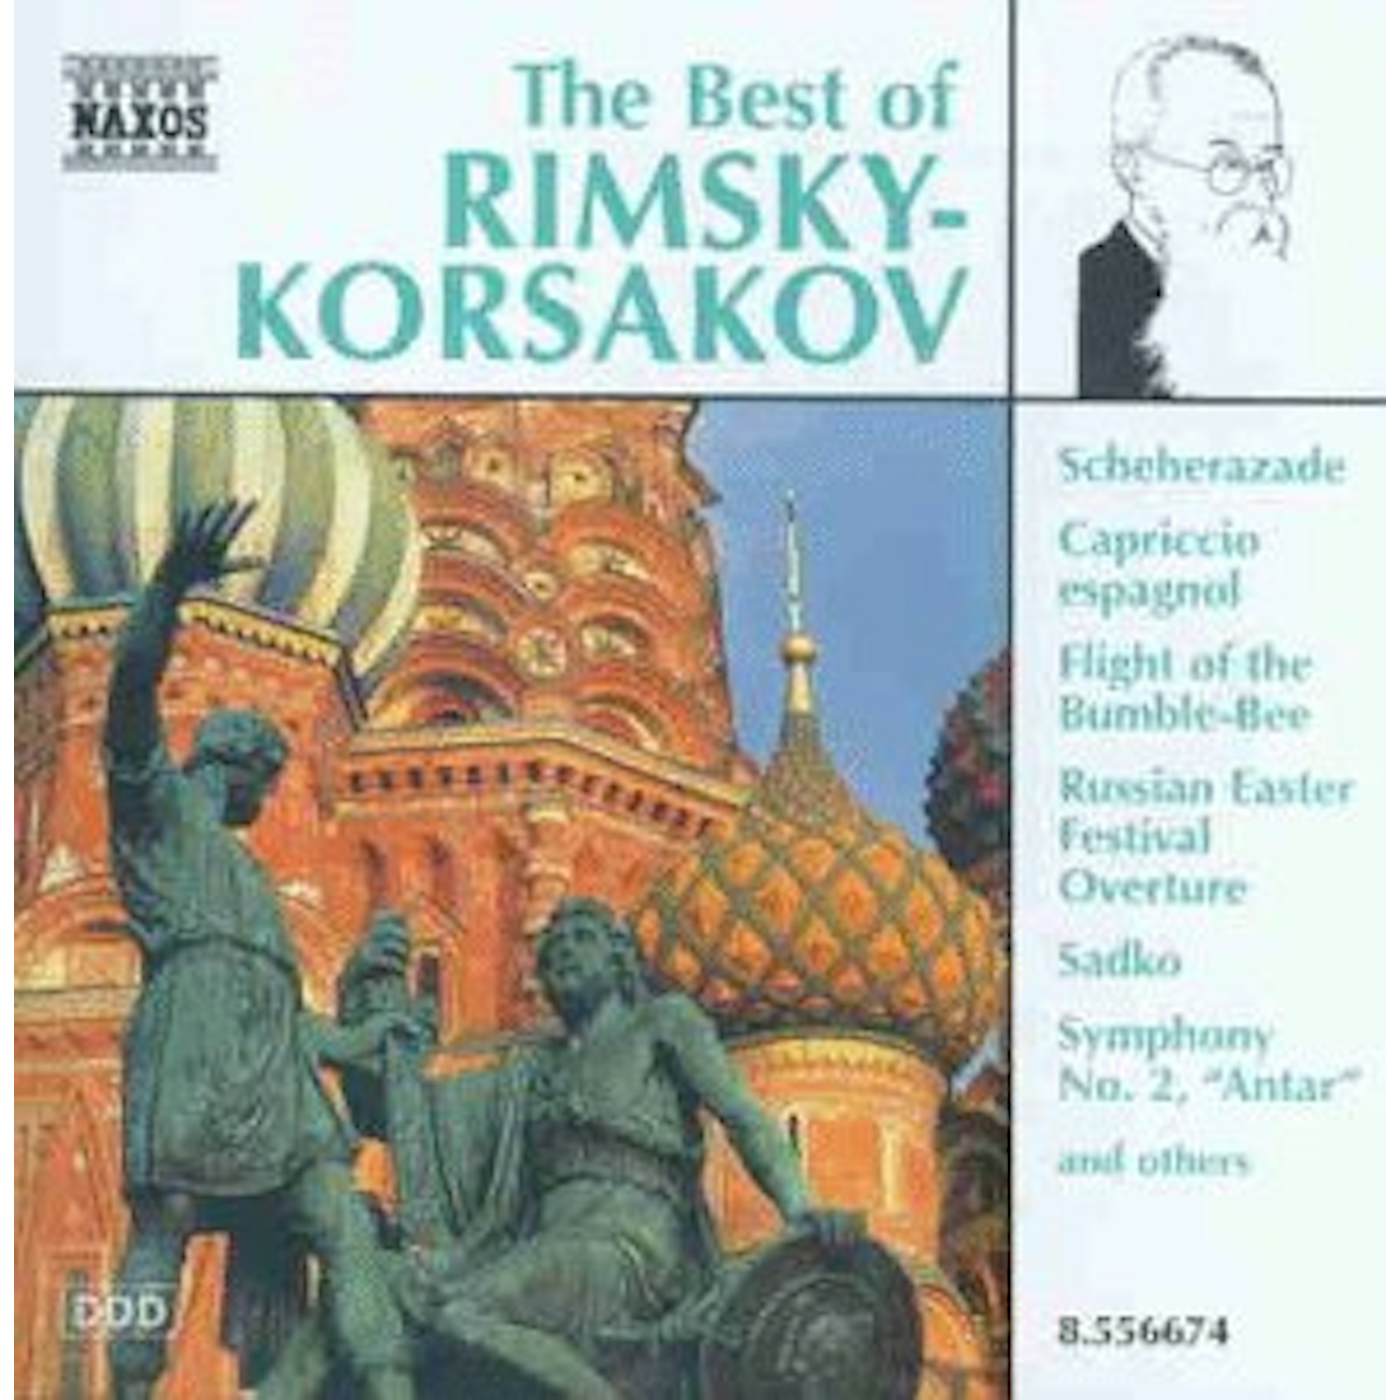 BEST OF RIMSKY-KORSAKOV CD